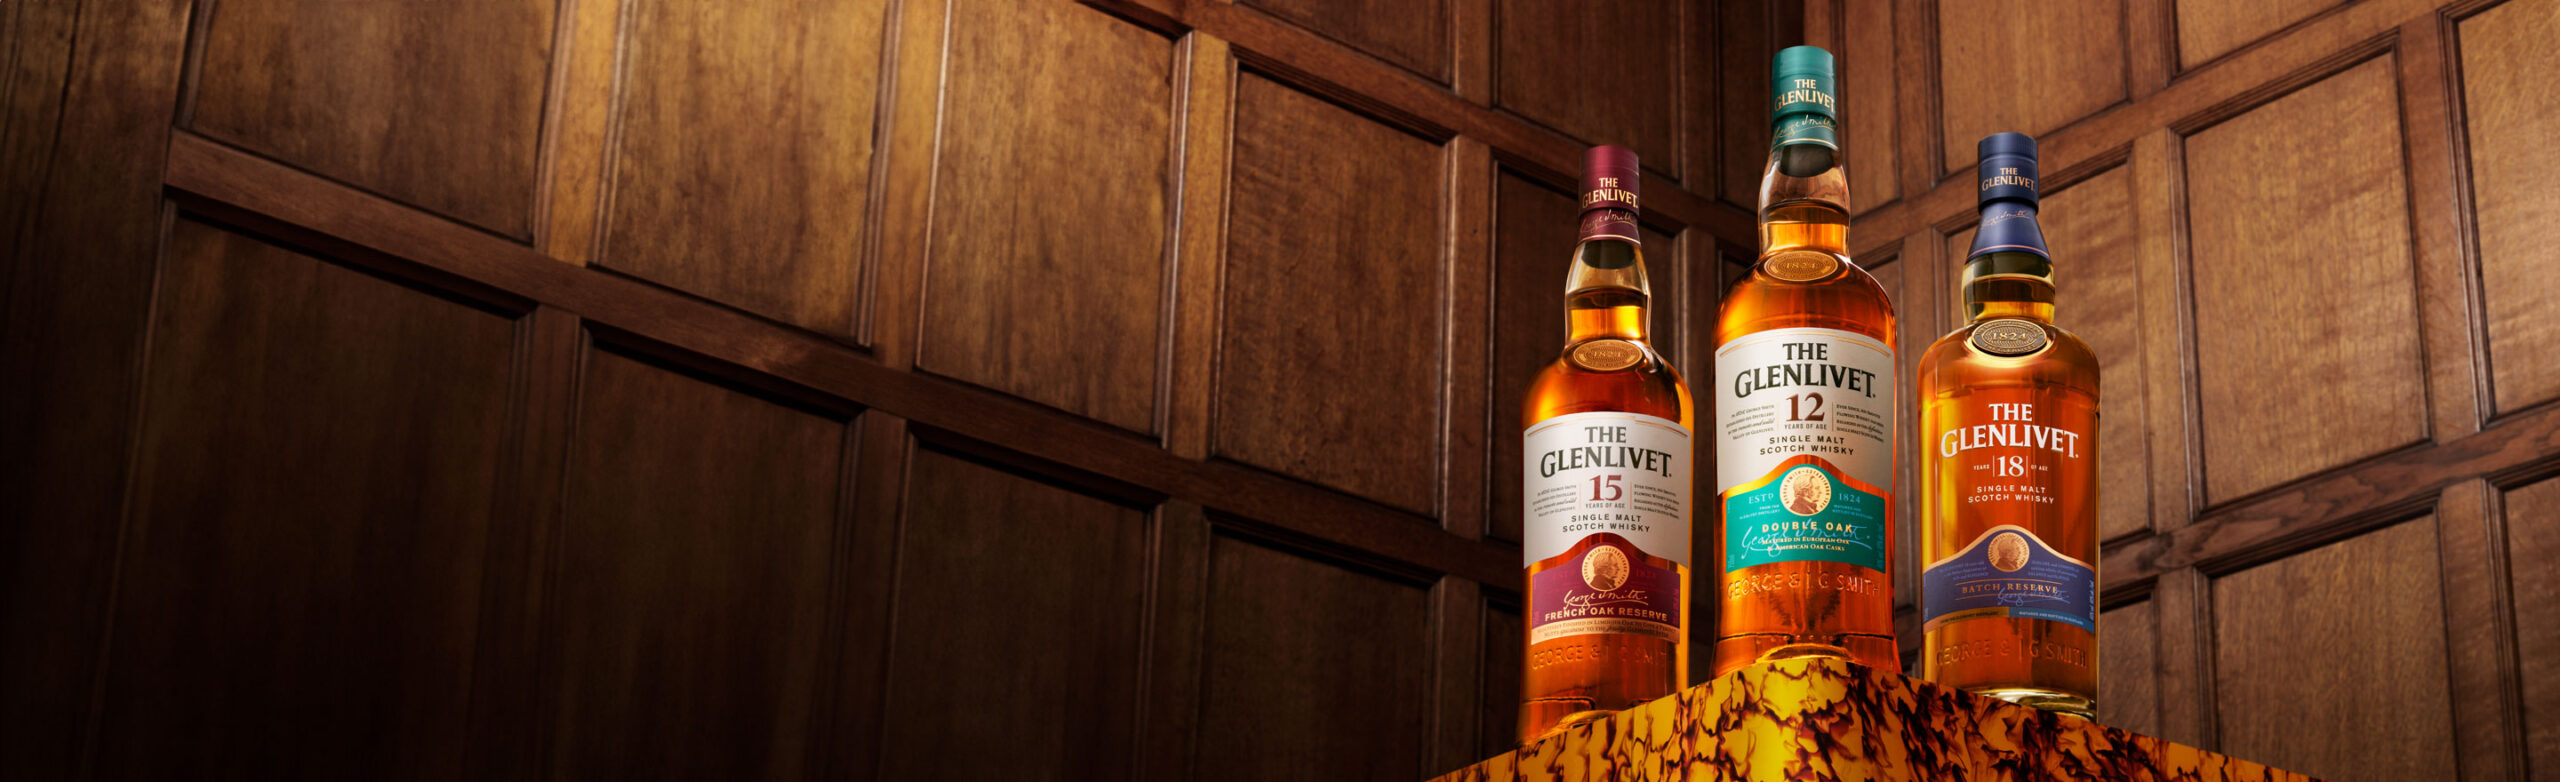 The Glenlivet Whisky Collection - The Glenlivet